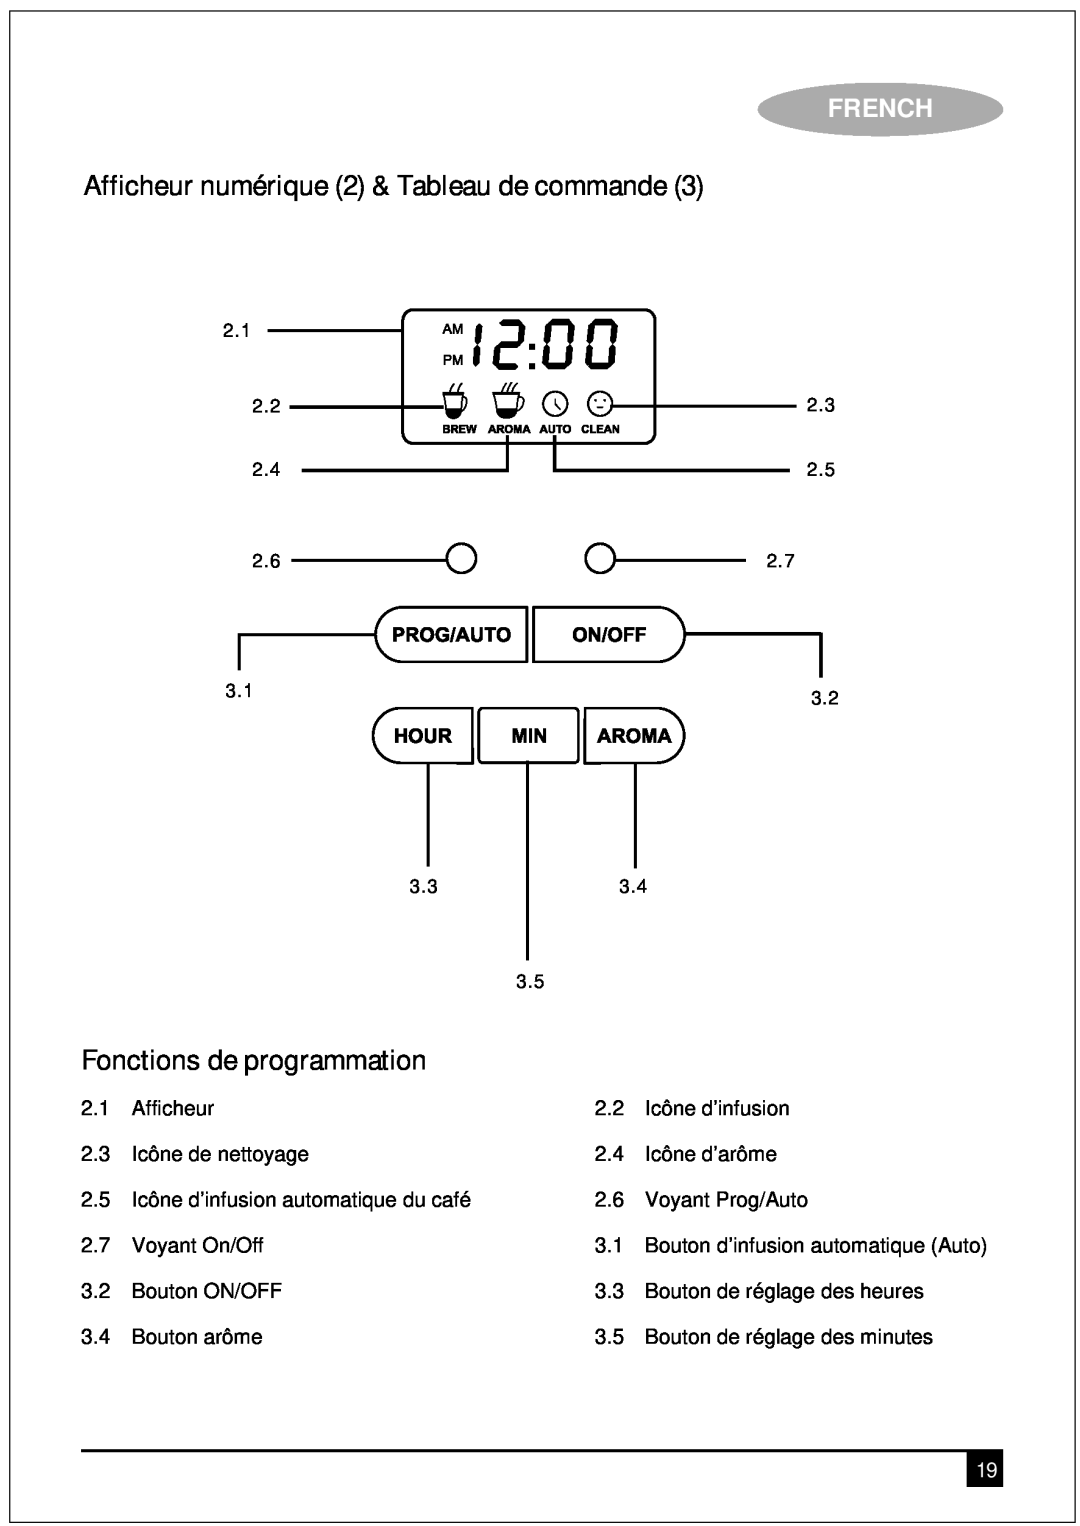 Black & Decker DCM90 manual Afficheur numérique 2 & Tableau de commande, Fonctions de programmation, French 